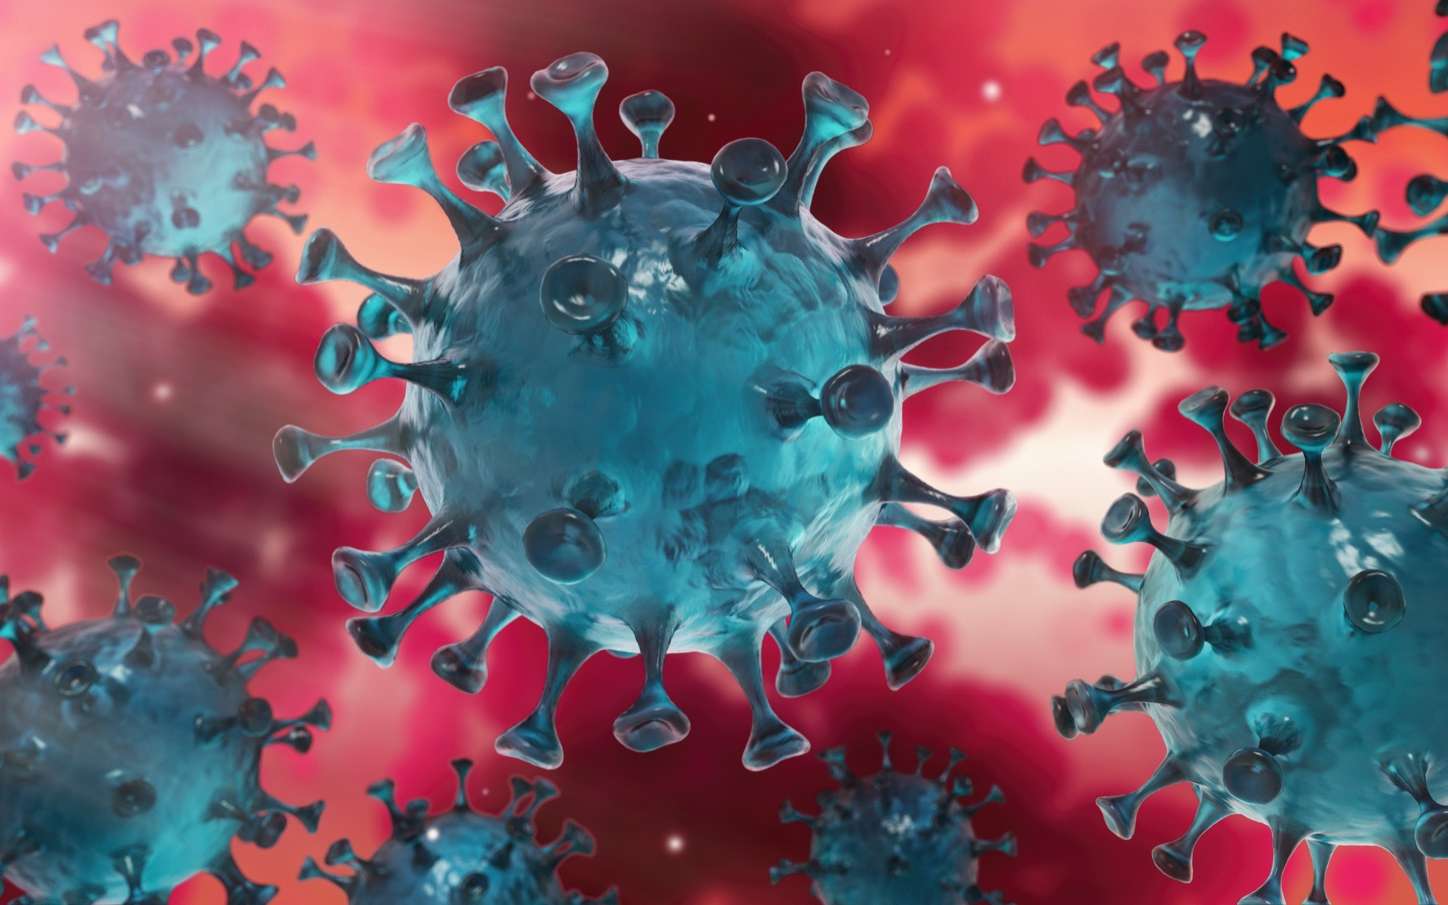 Le nouveau coronavirus serait plus contagieux que prévu initialement. © Peterschreiber.media, Adobe stock